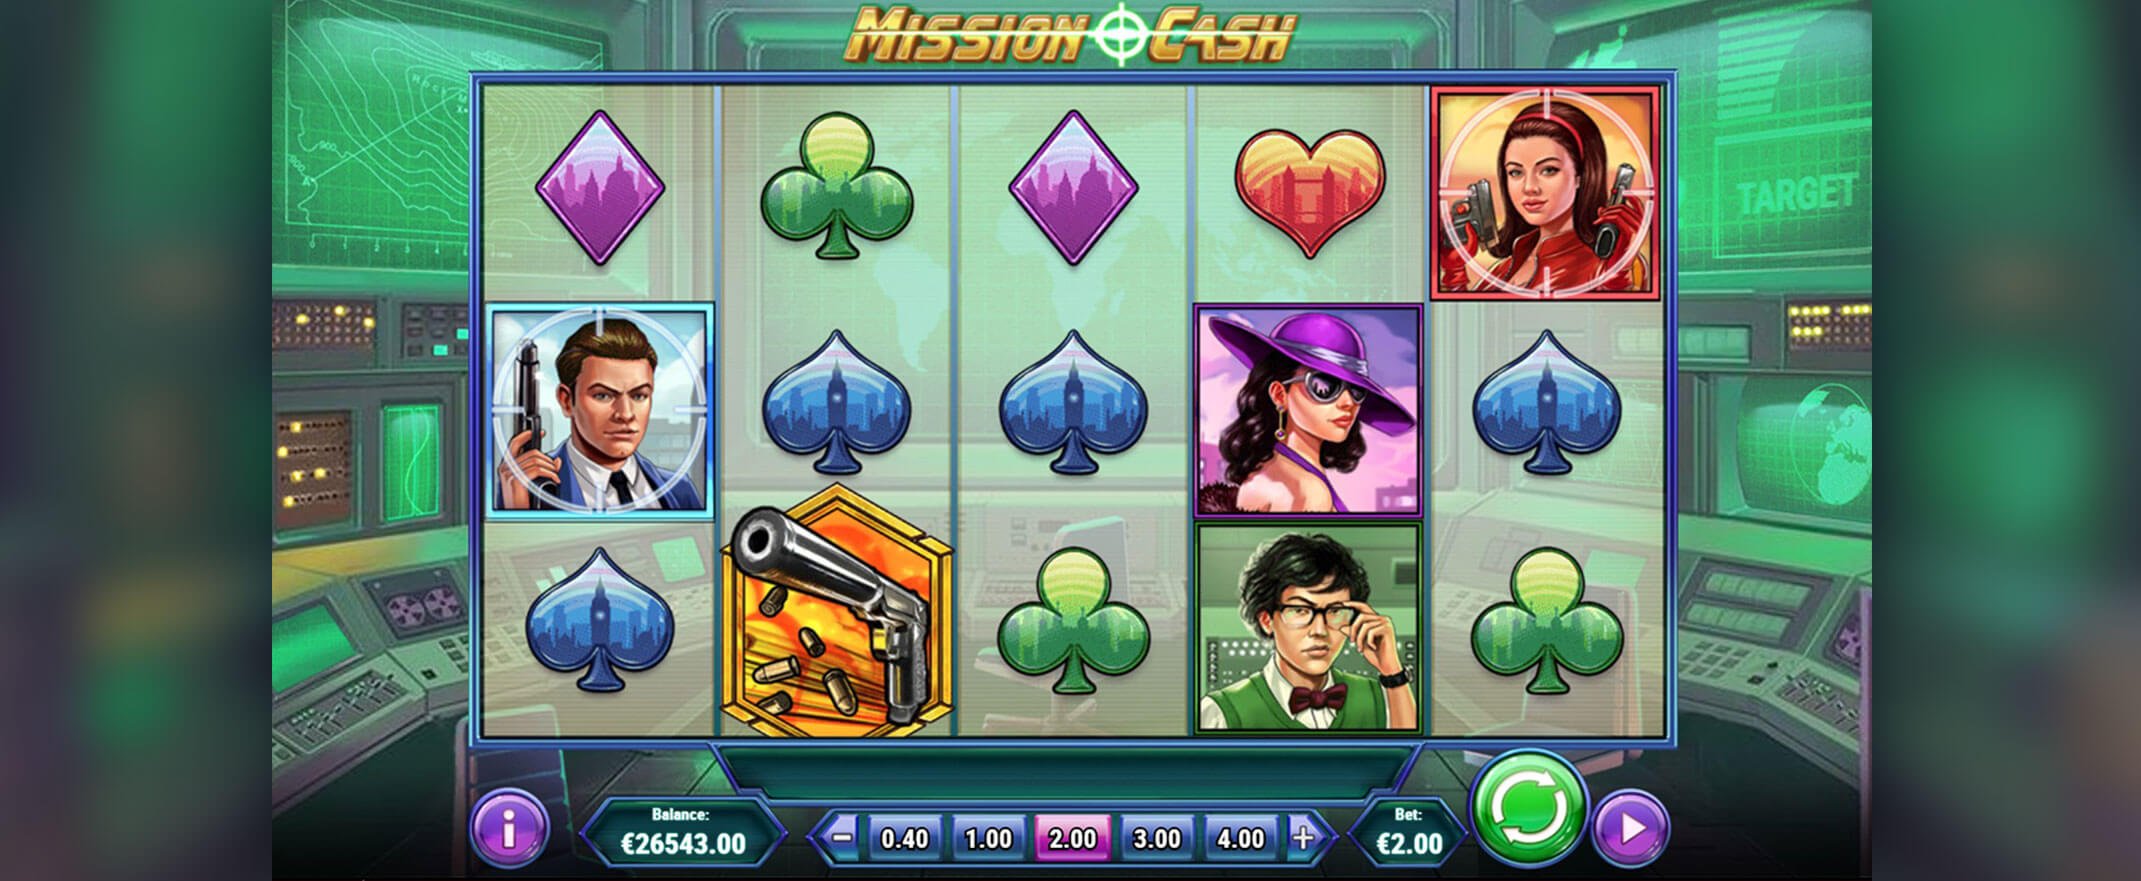 Mission Cash slot